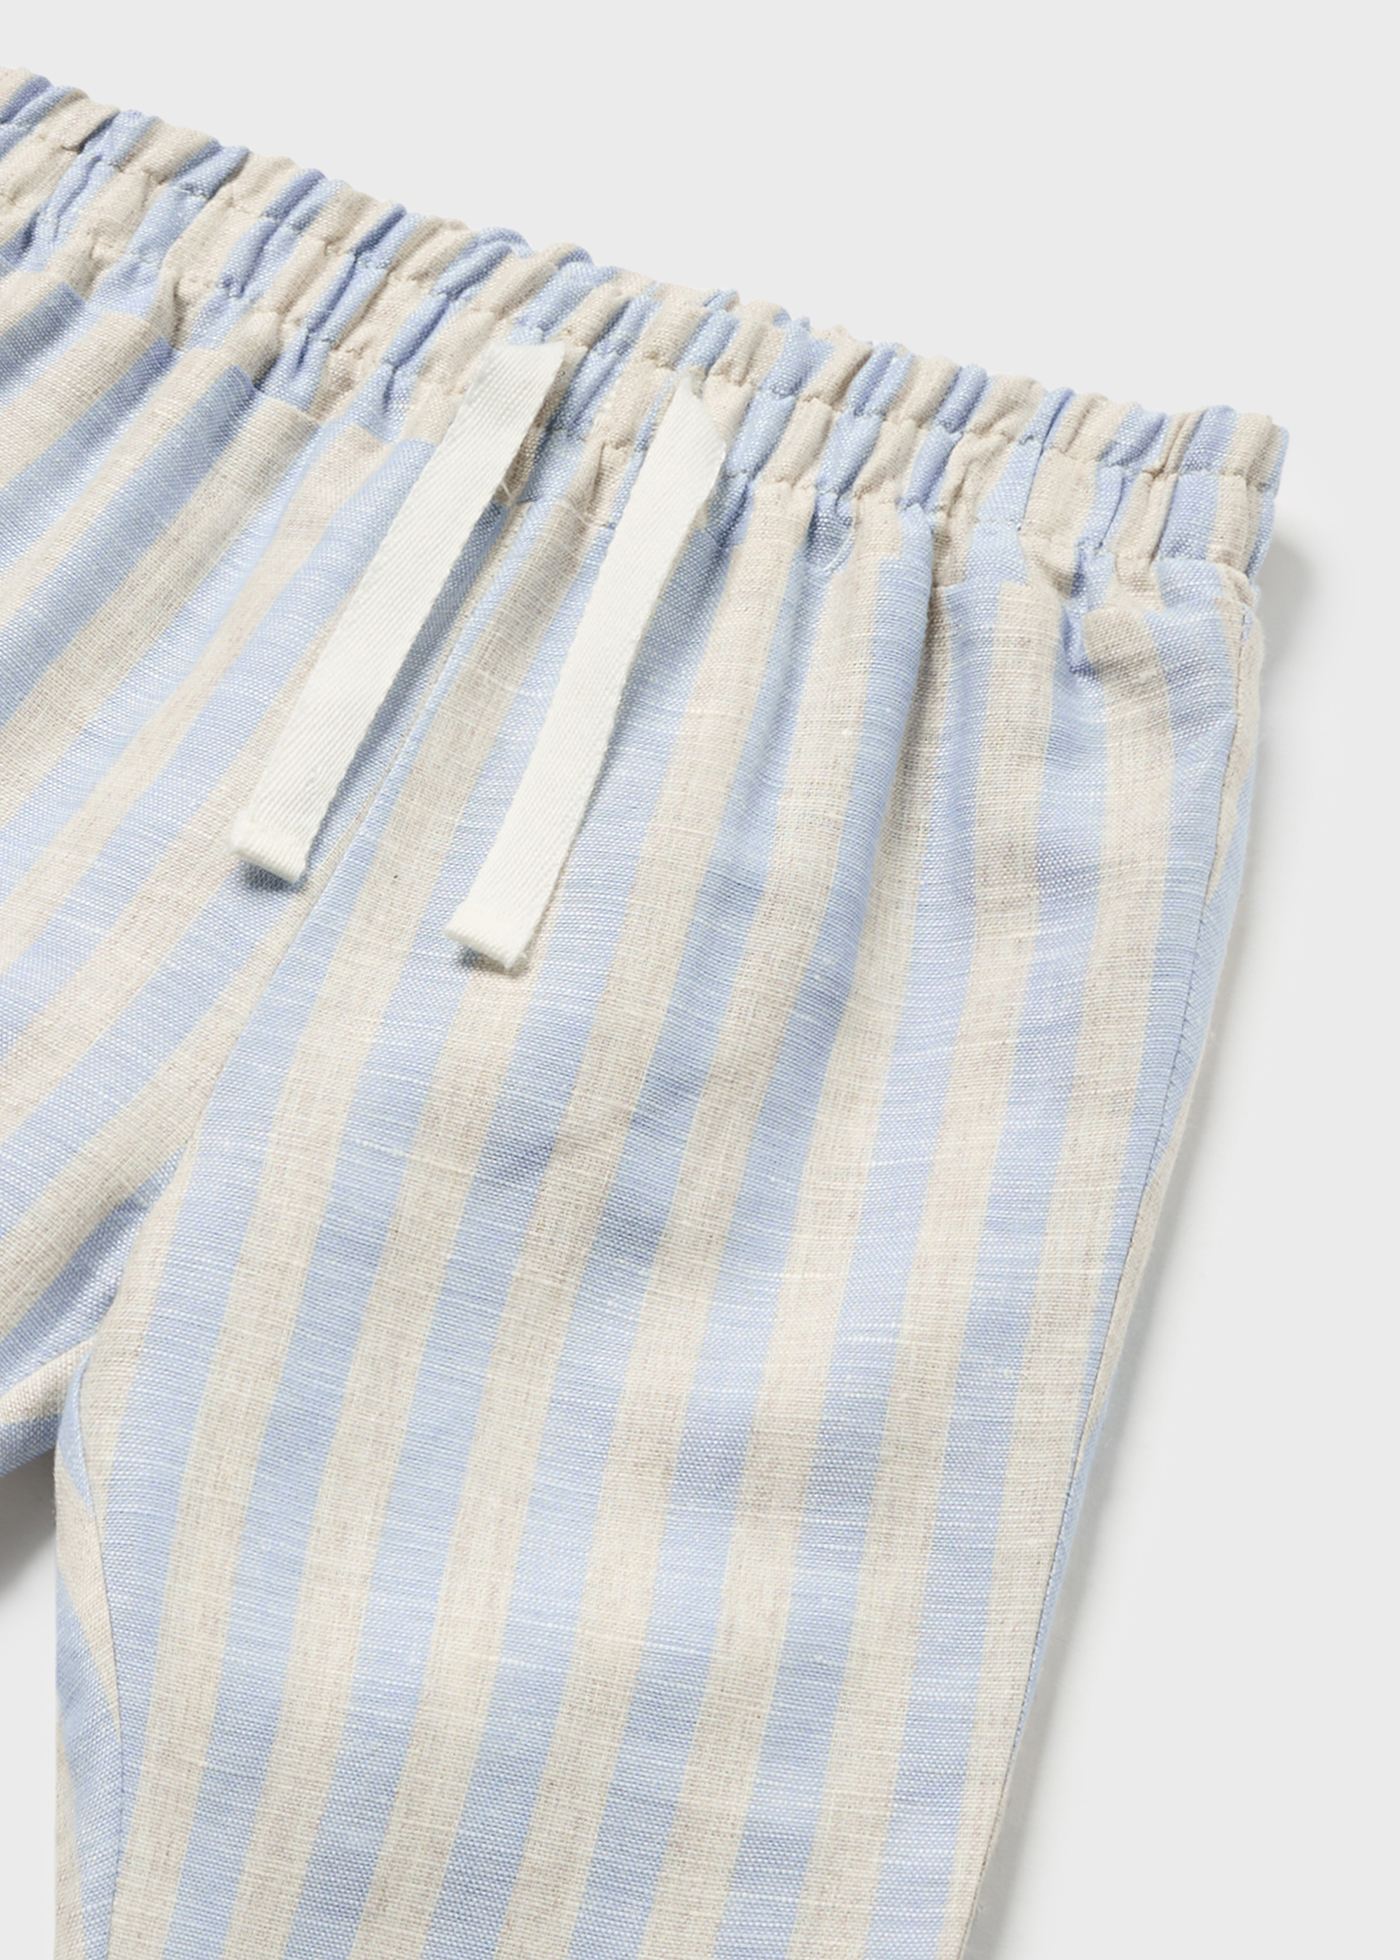 Pantalon long en lin nouveau-né